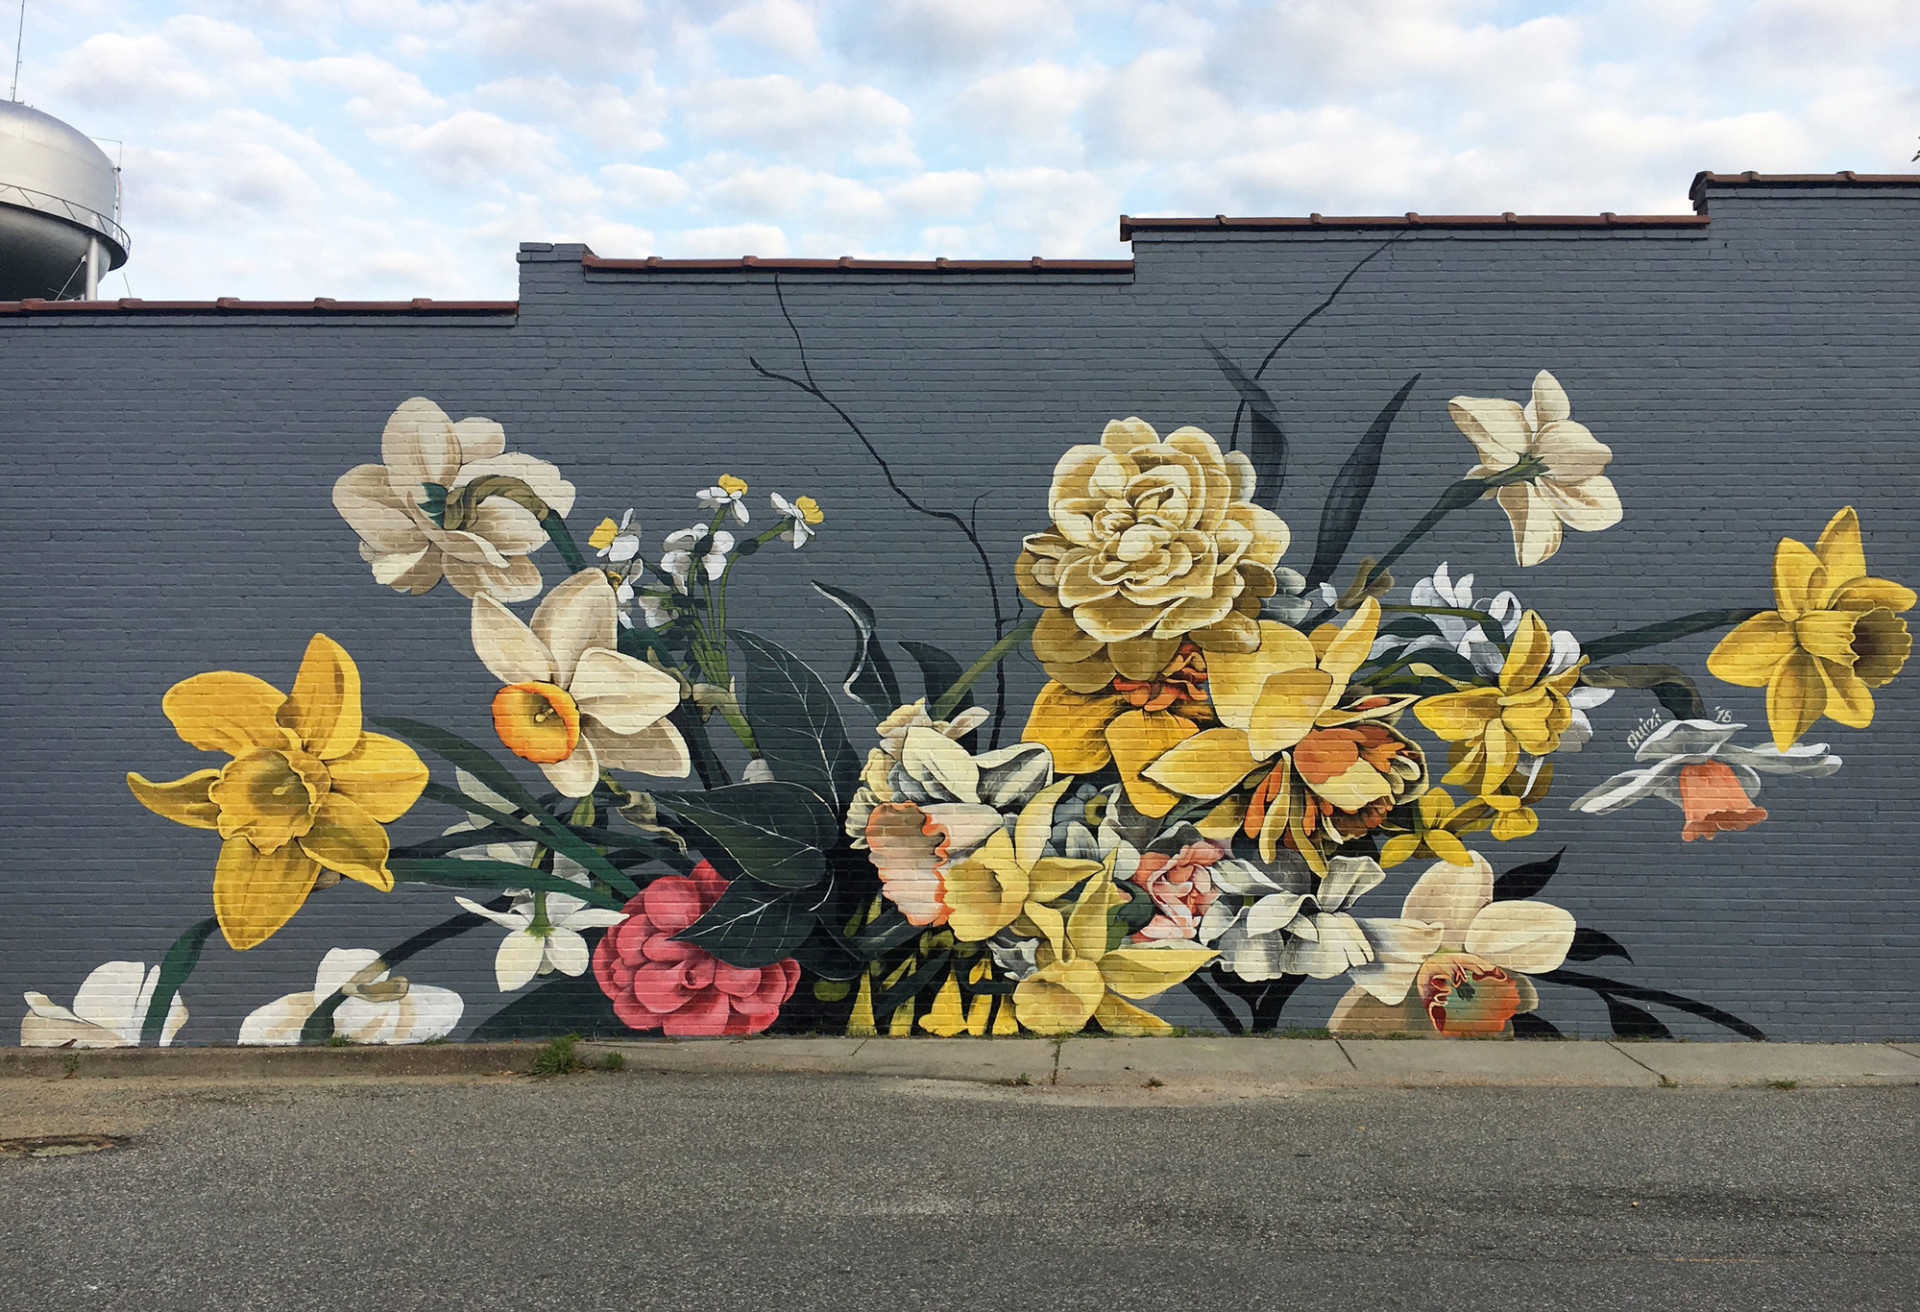 公共艺术家ouizi原本在洛杉矶从事插画工作,精于手工刻字丶大型花卉